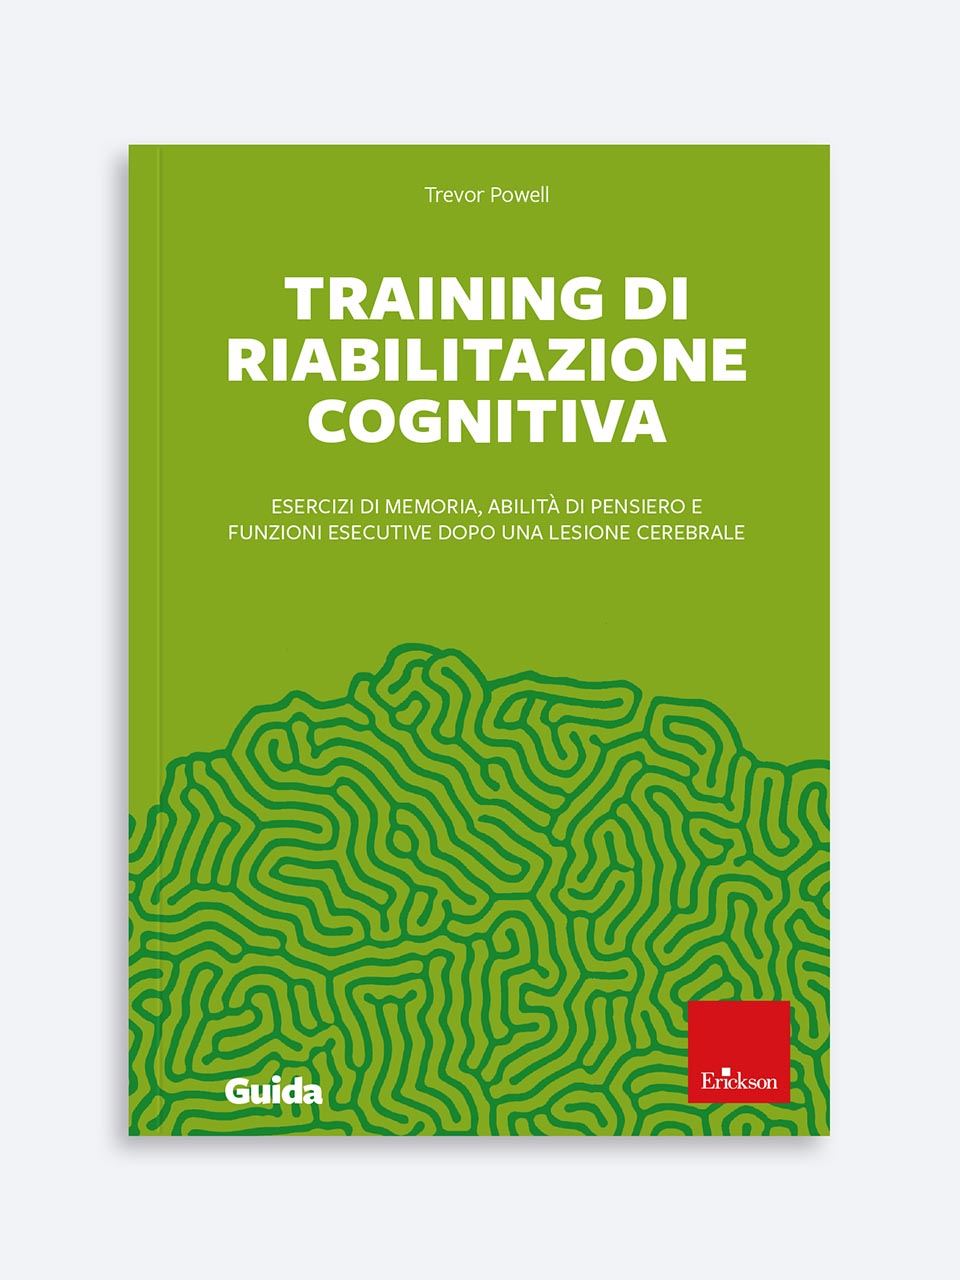 Training di riabilitazione cognitiva | esercizi e suggerimenti 2